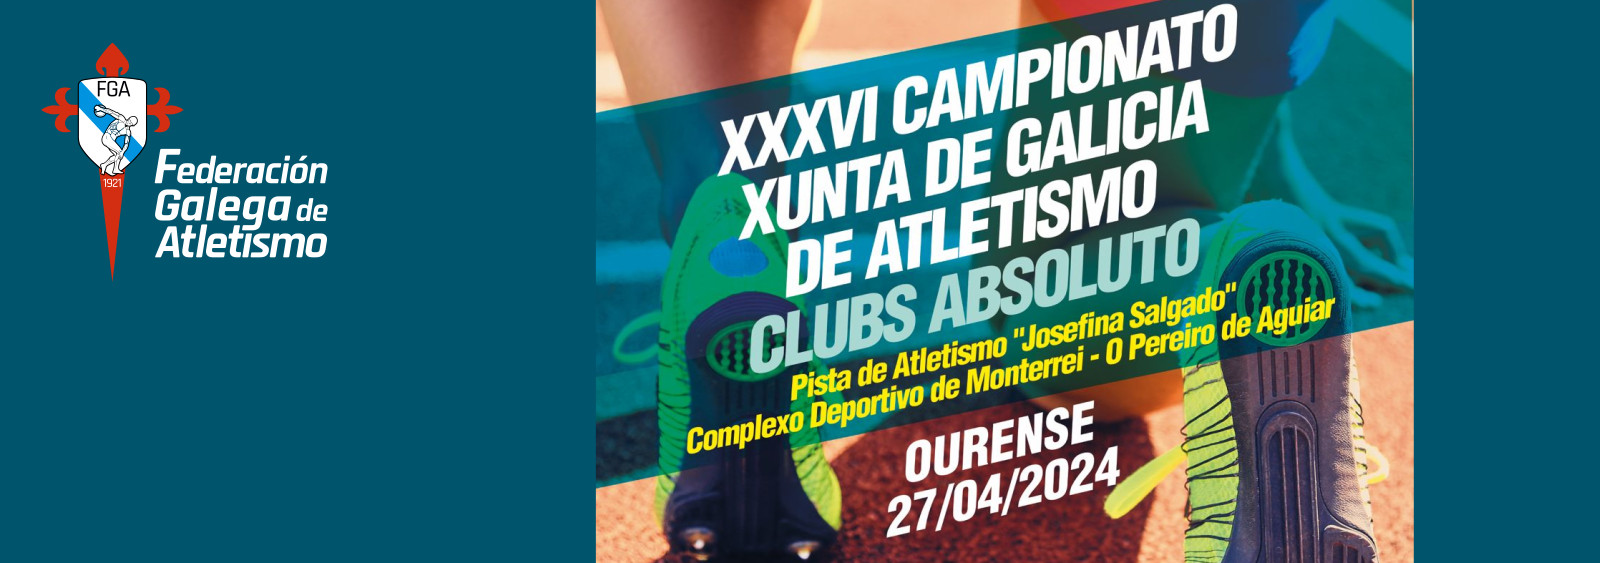  XXXVI Campionato Xunta de Galicia absoluto de clubs.  Pista de Atletismo Josefina Salgado, 27 abril 2024